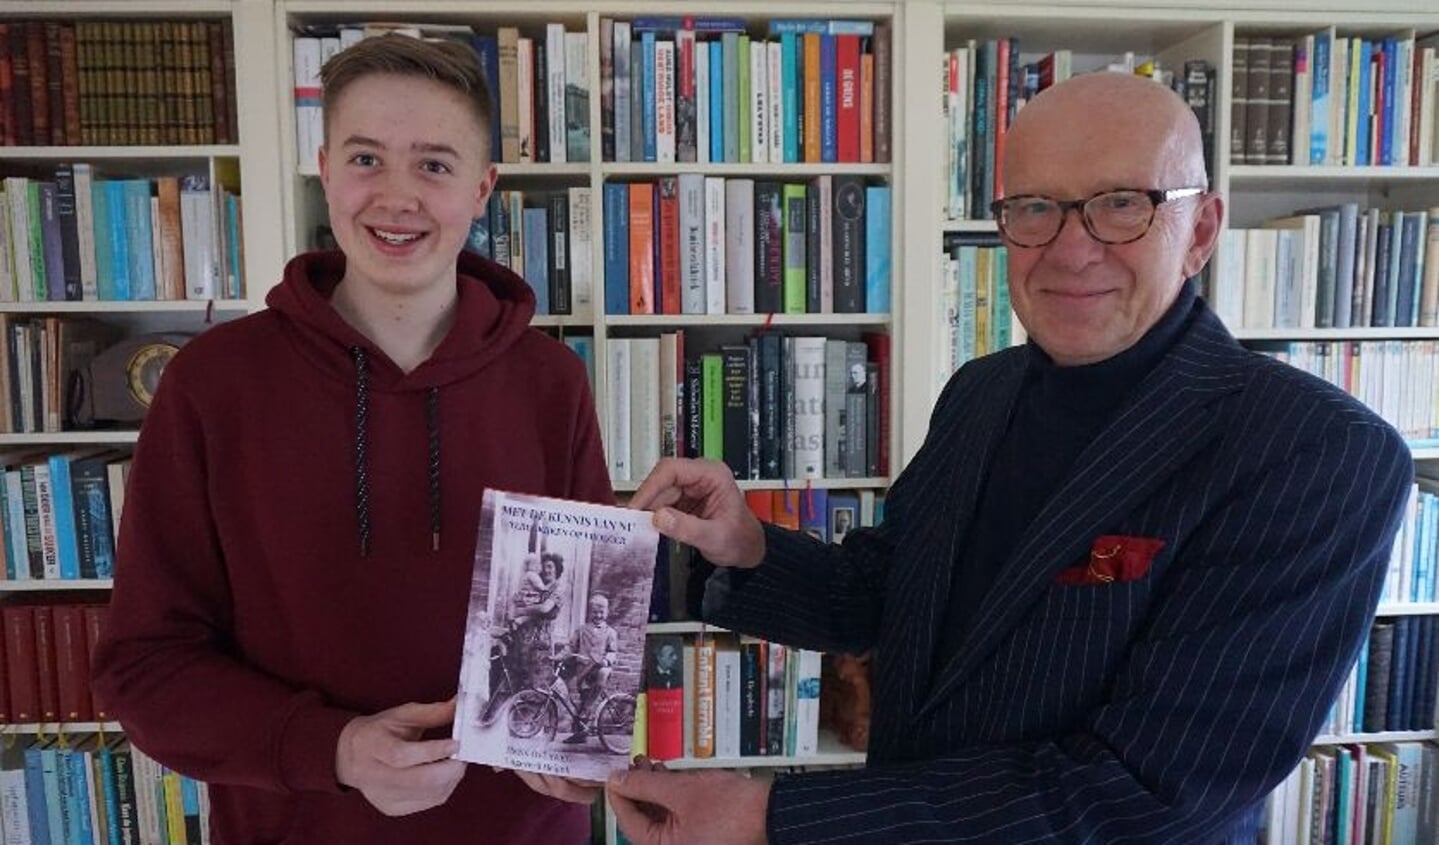 Geschiedenisverhalen gaan leven wanneer ze doorgegeven worden. Henk Overweg overhandigt het eerste exemplaar van zijn boek aan zijn oudste kleinzoon Jorik.